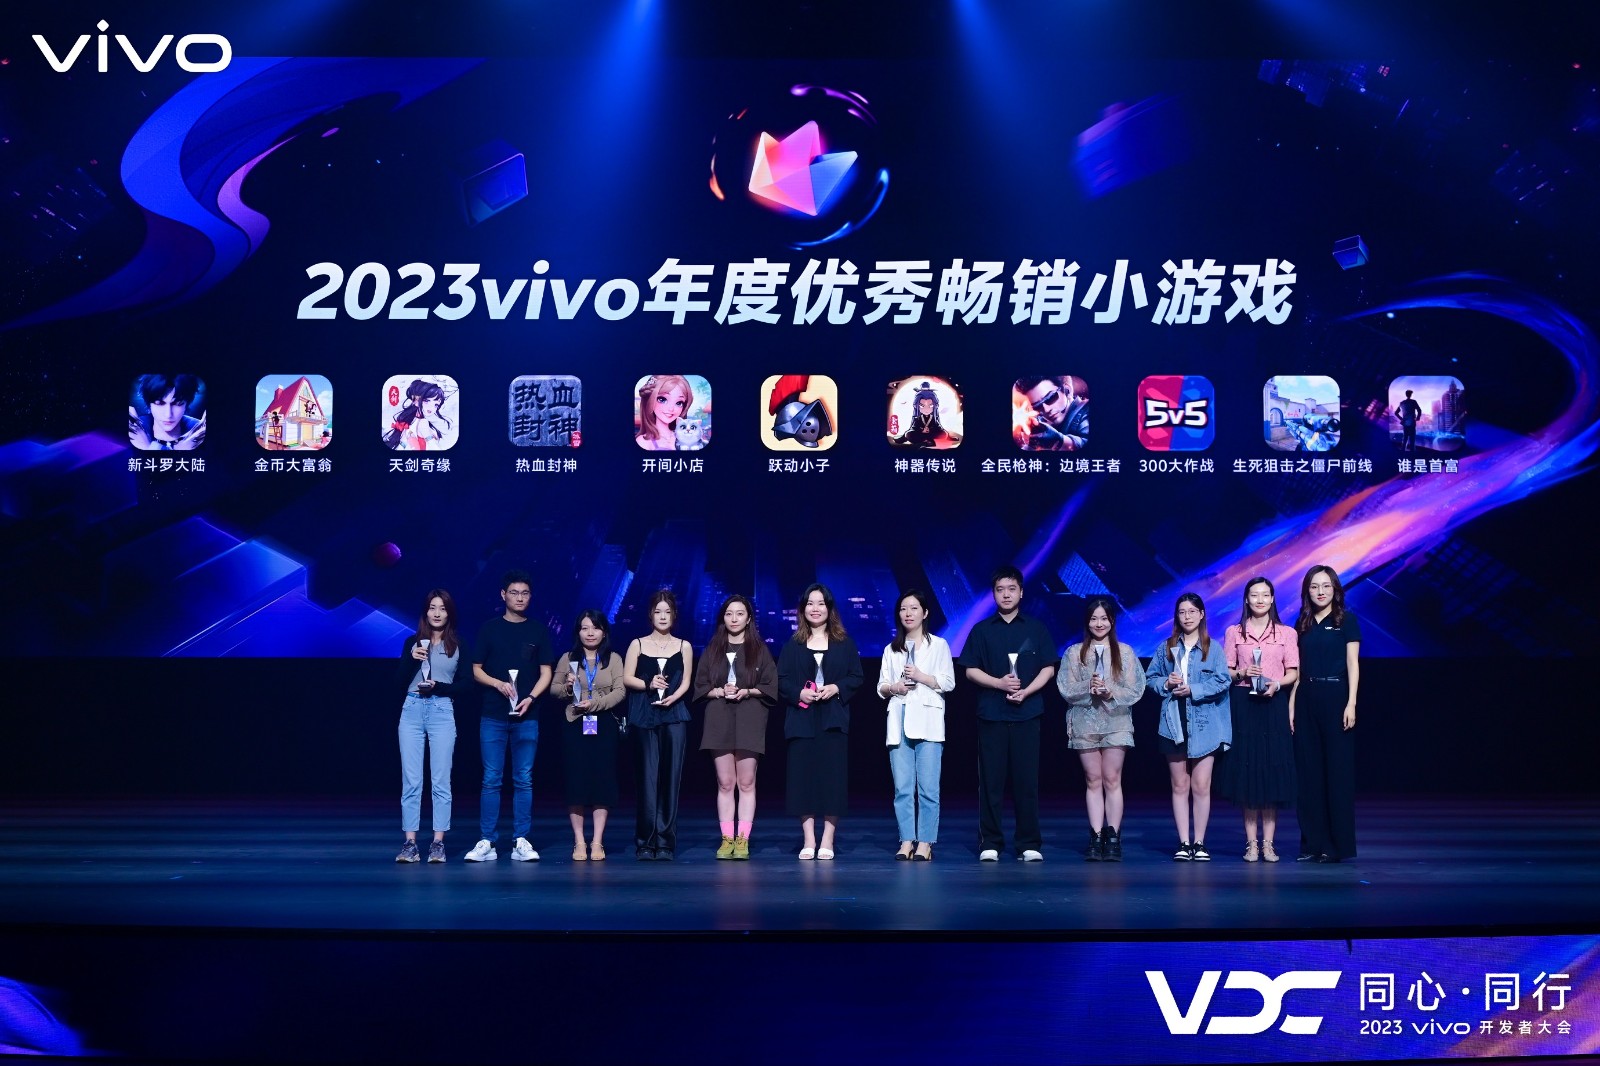 《天剑奇缘》获评2023vivo年度优秀畅销小游戏-1.jpg